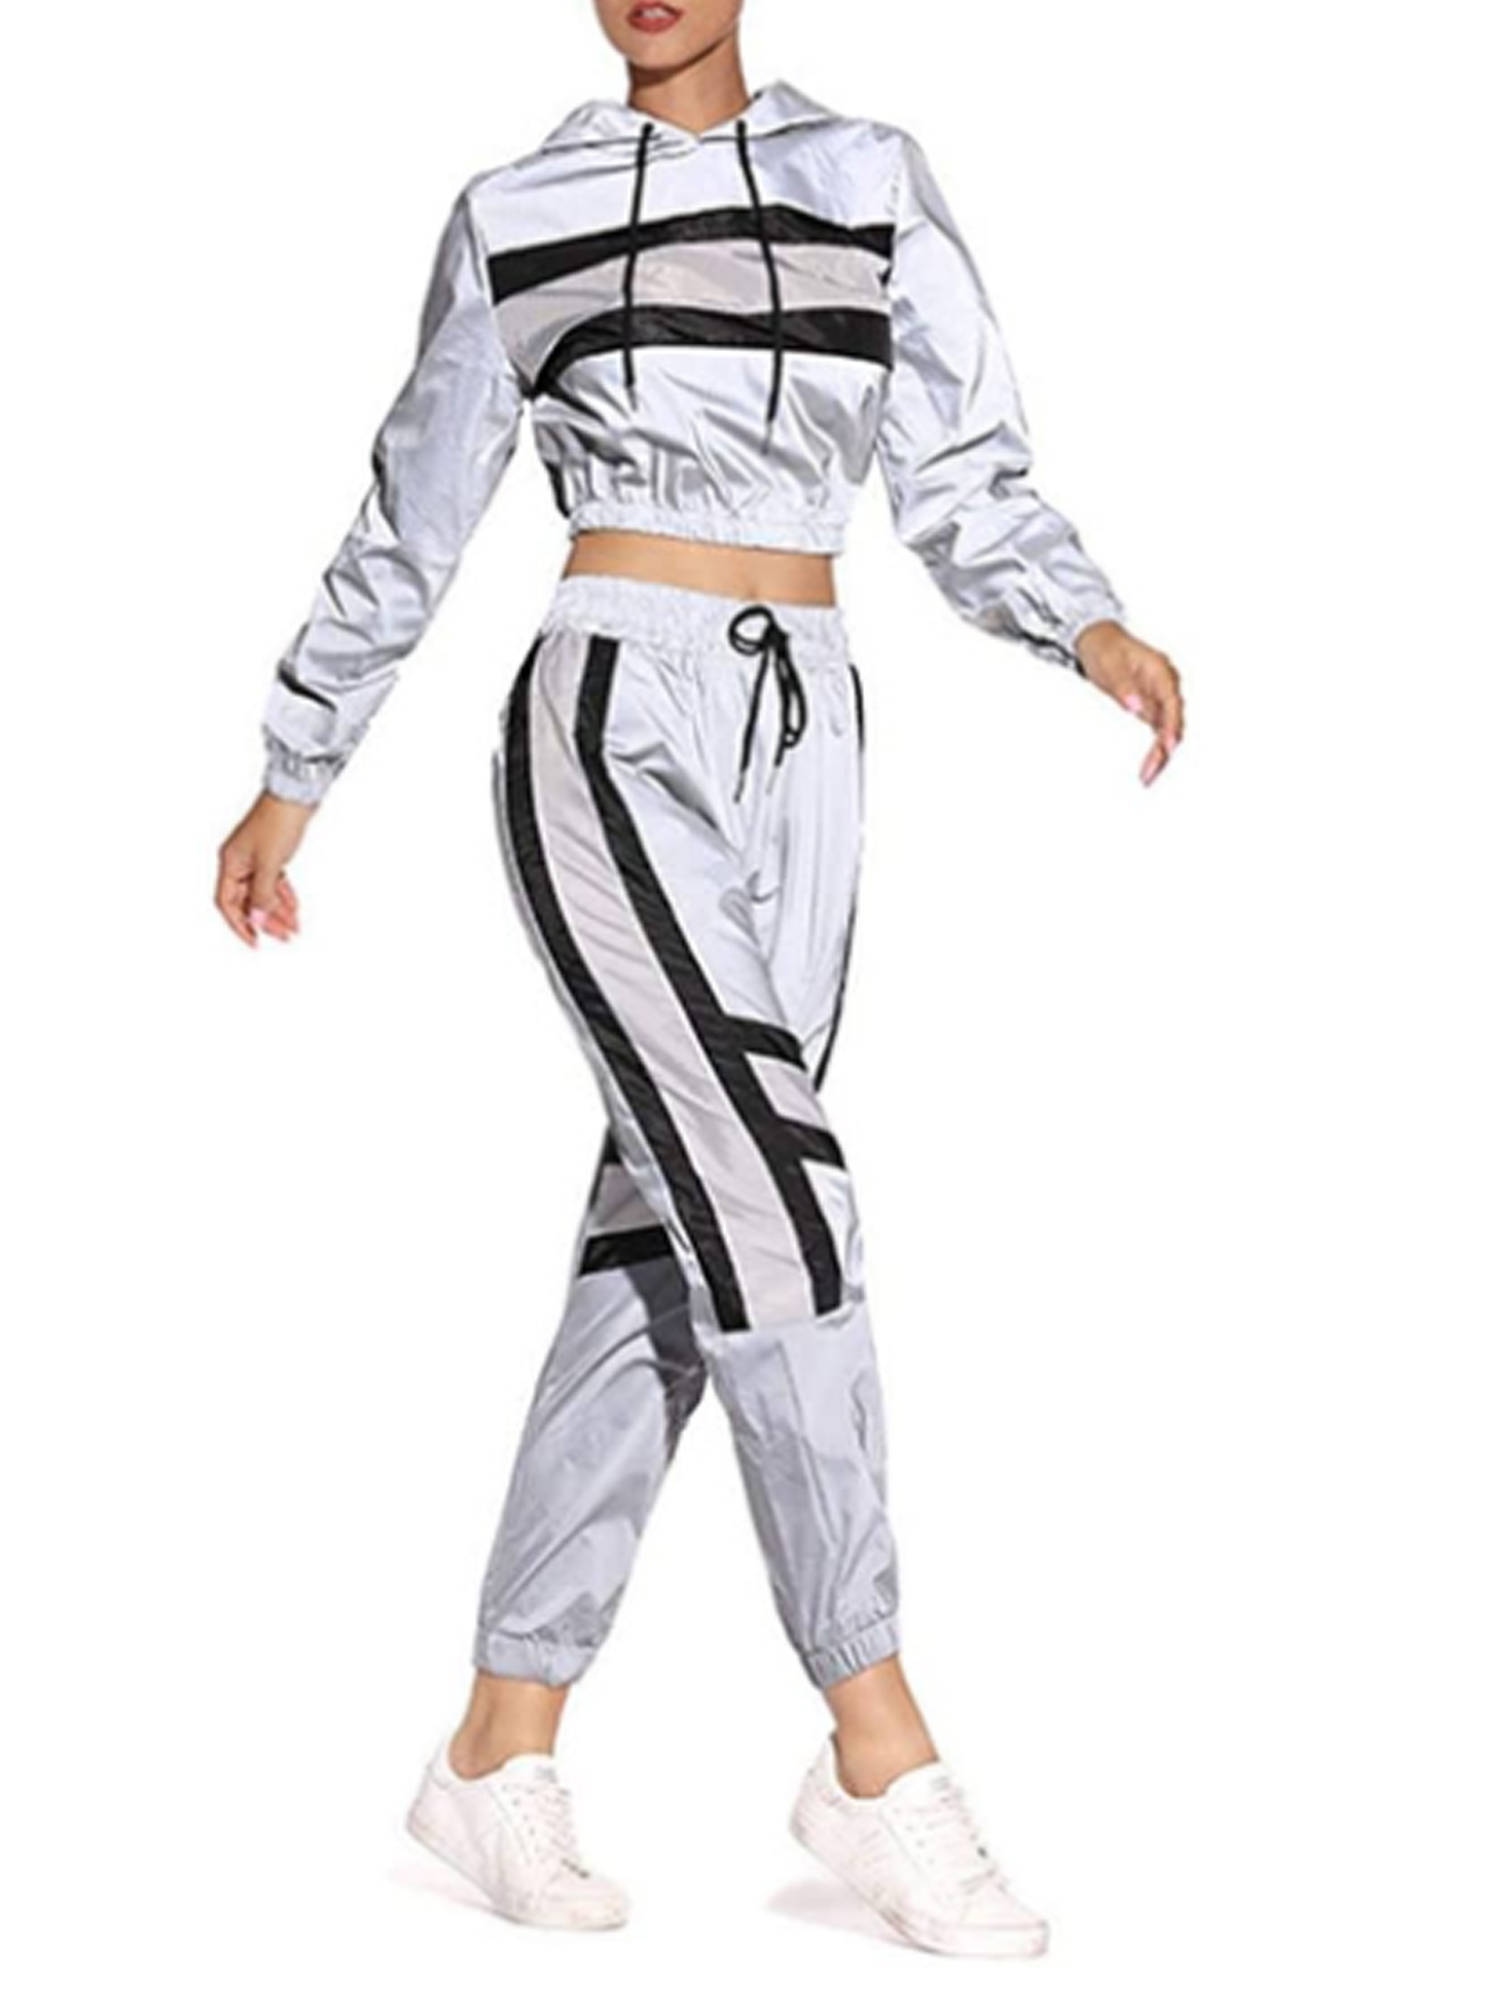 Listenwind SDD Women Reflective Tracksuit Lightweight Windbreaker Hooded Jacket Sweatpants - image 1 of 6